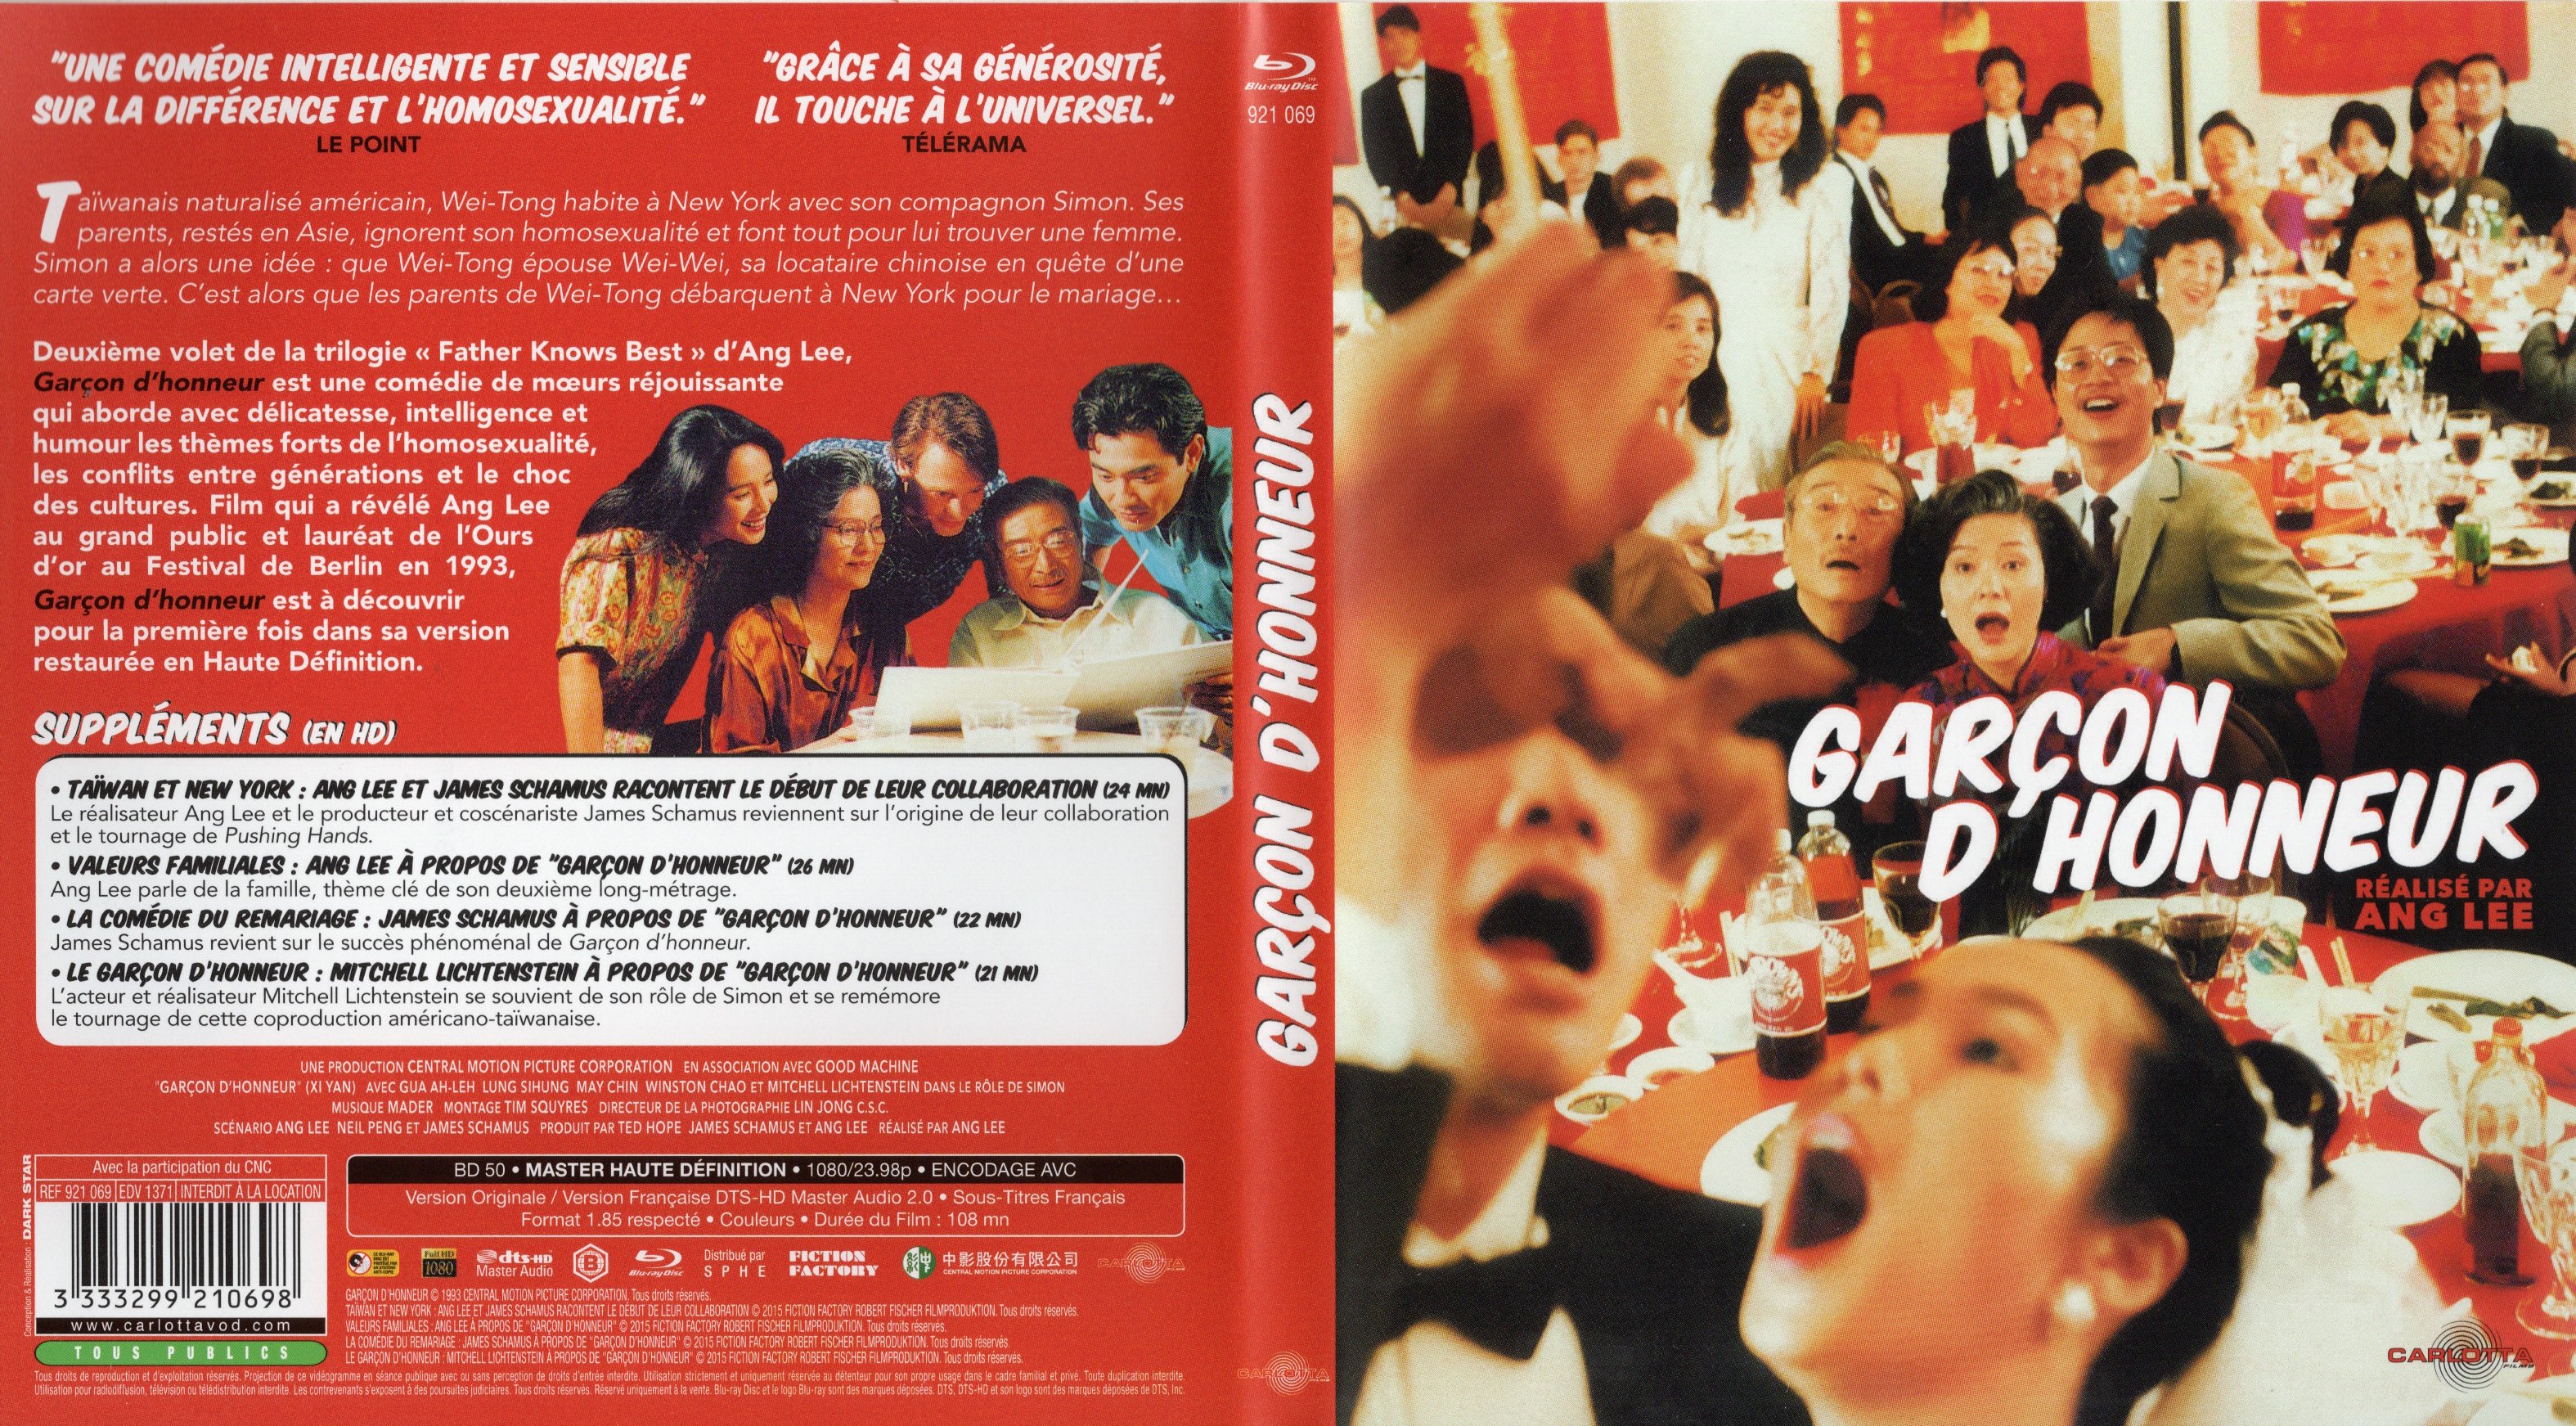 Jaquette DVD Garcon d